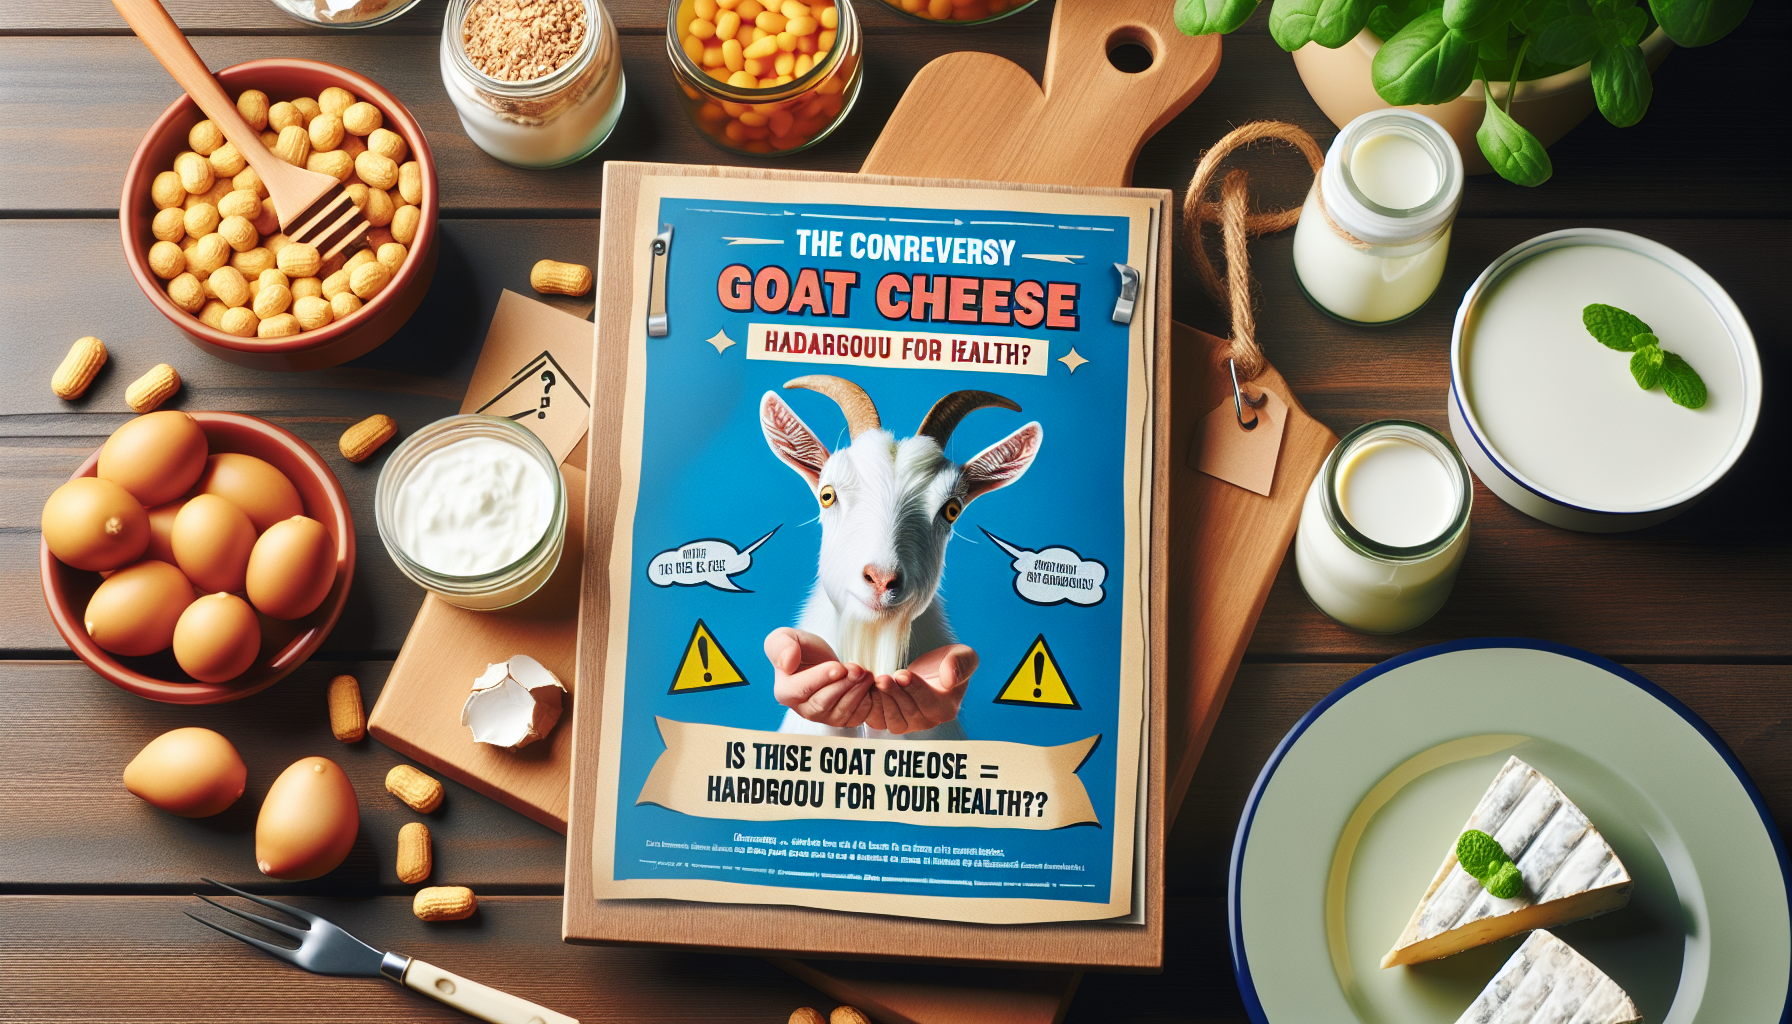 découvrez le rappel produit qui fait trembler les consommateurs à propos de ce fromage de chèvre, potentiellement dangereux pour la santé.